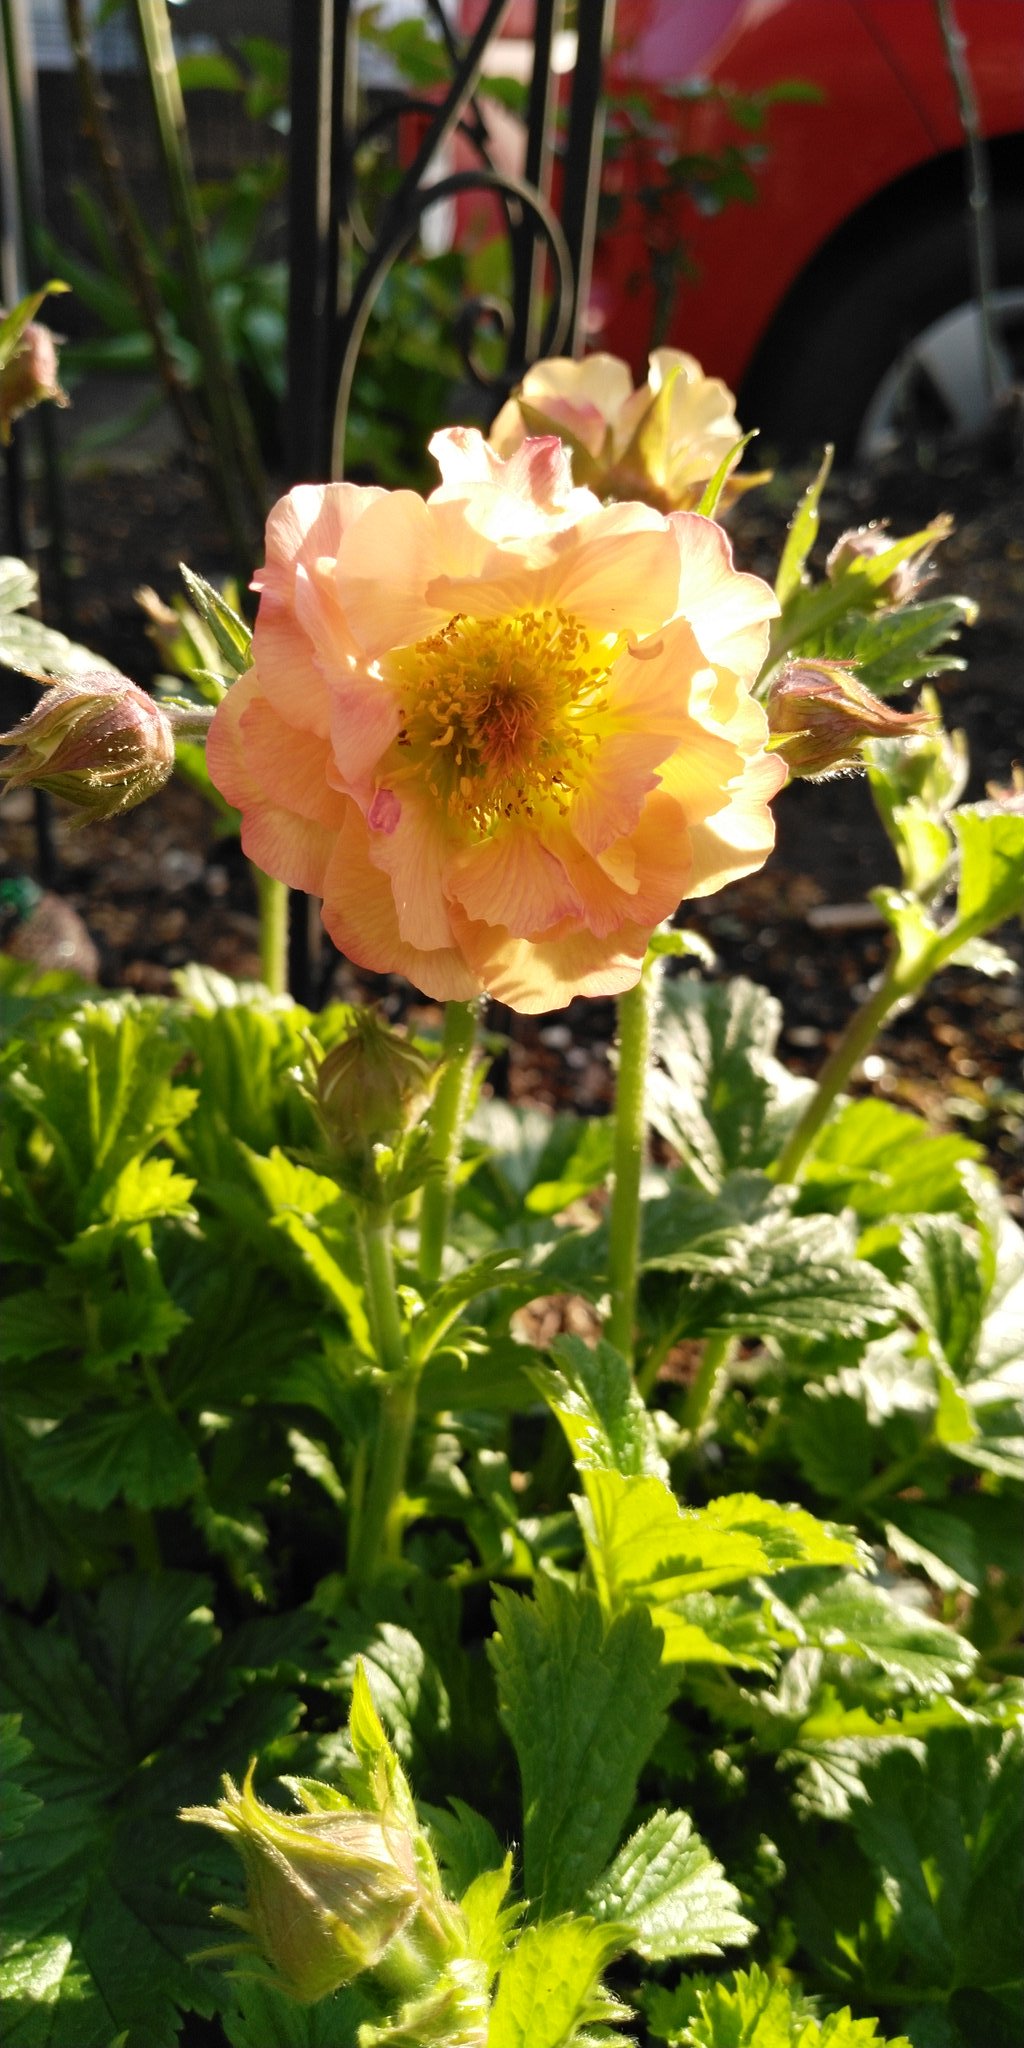 ミント 庭の花 宿根のゲウム 毎年この時期に咲く 透き通った花びらがかわいい ゲウム マイタイ ガーデニング T Co Wpajbb4nem Twitter